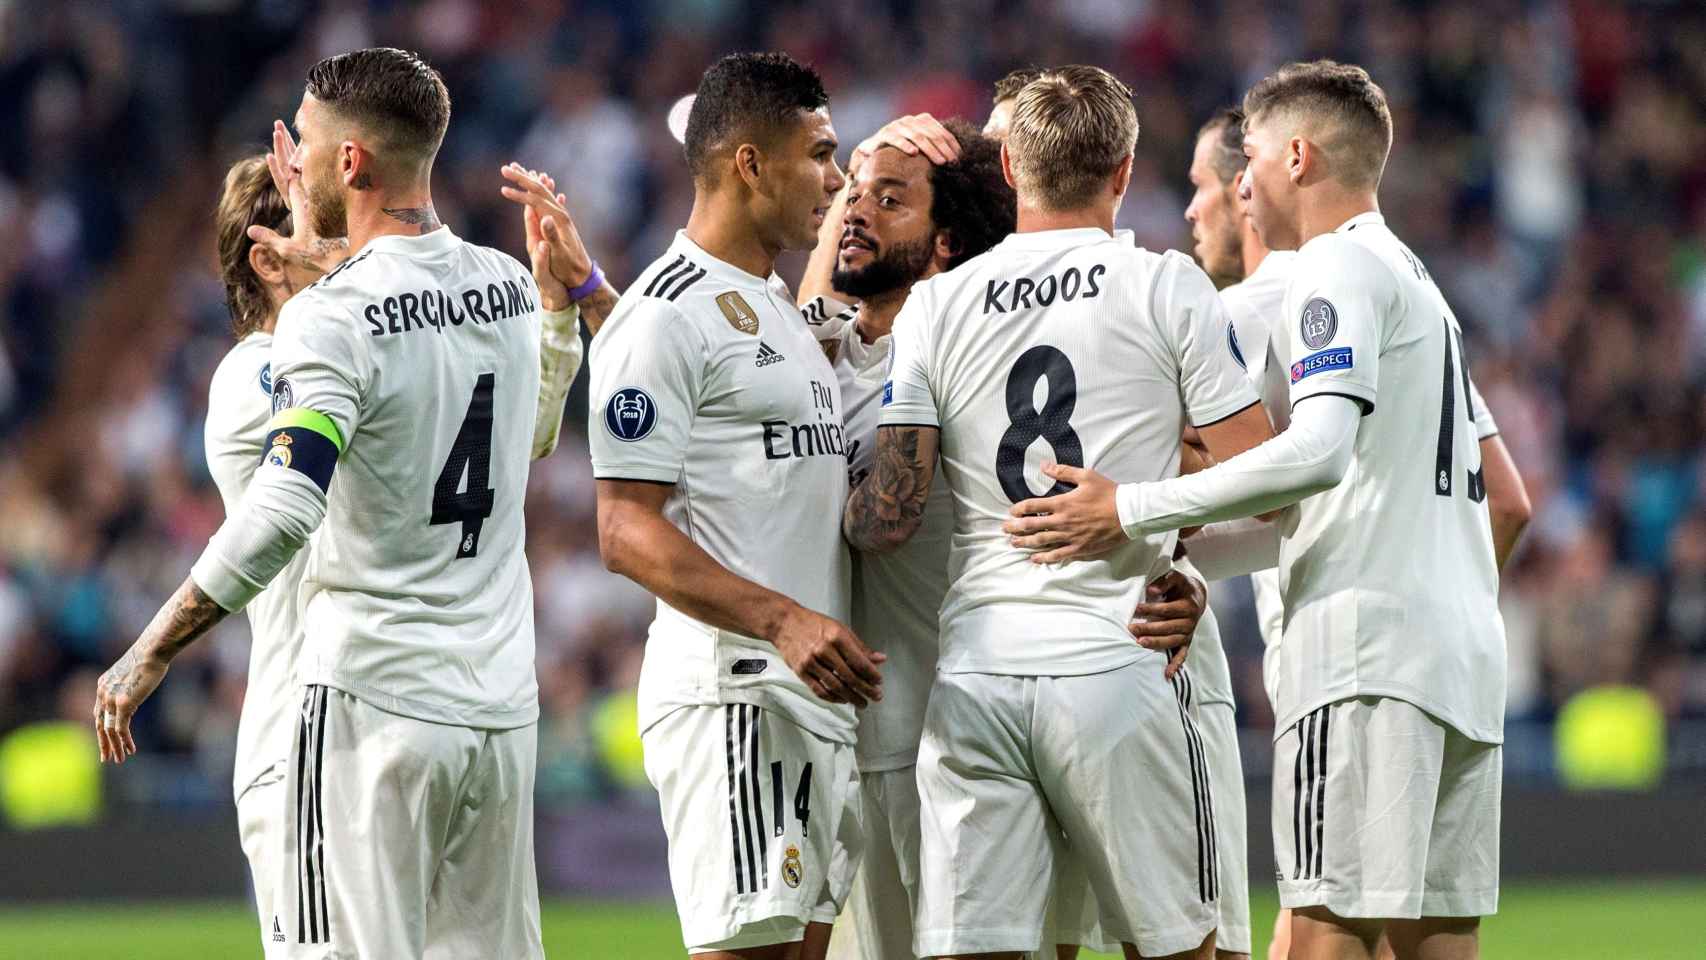 Los jugadores del Real Madrid celebran un gol / EFE